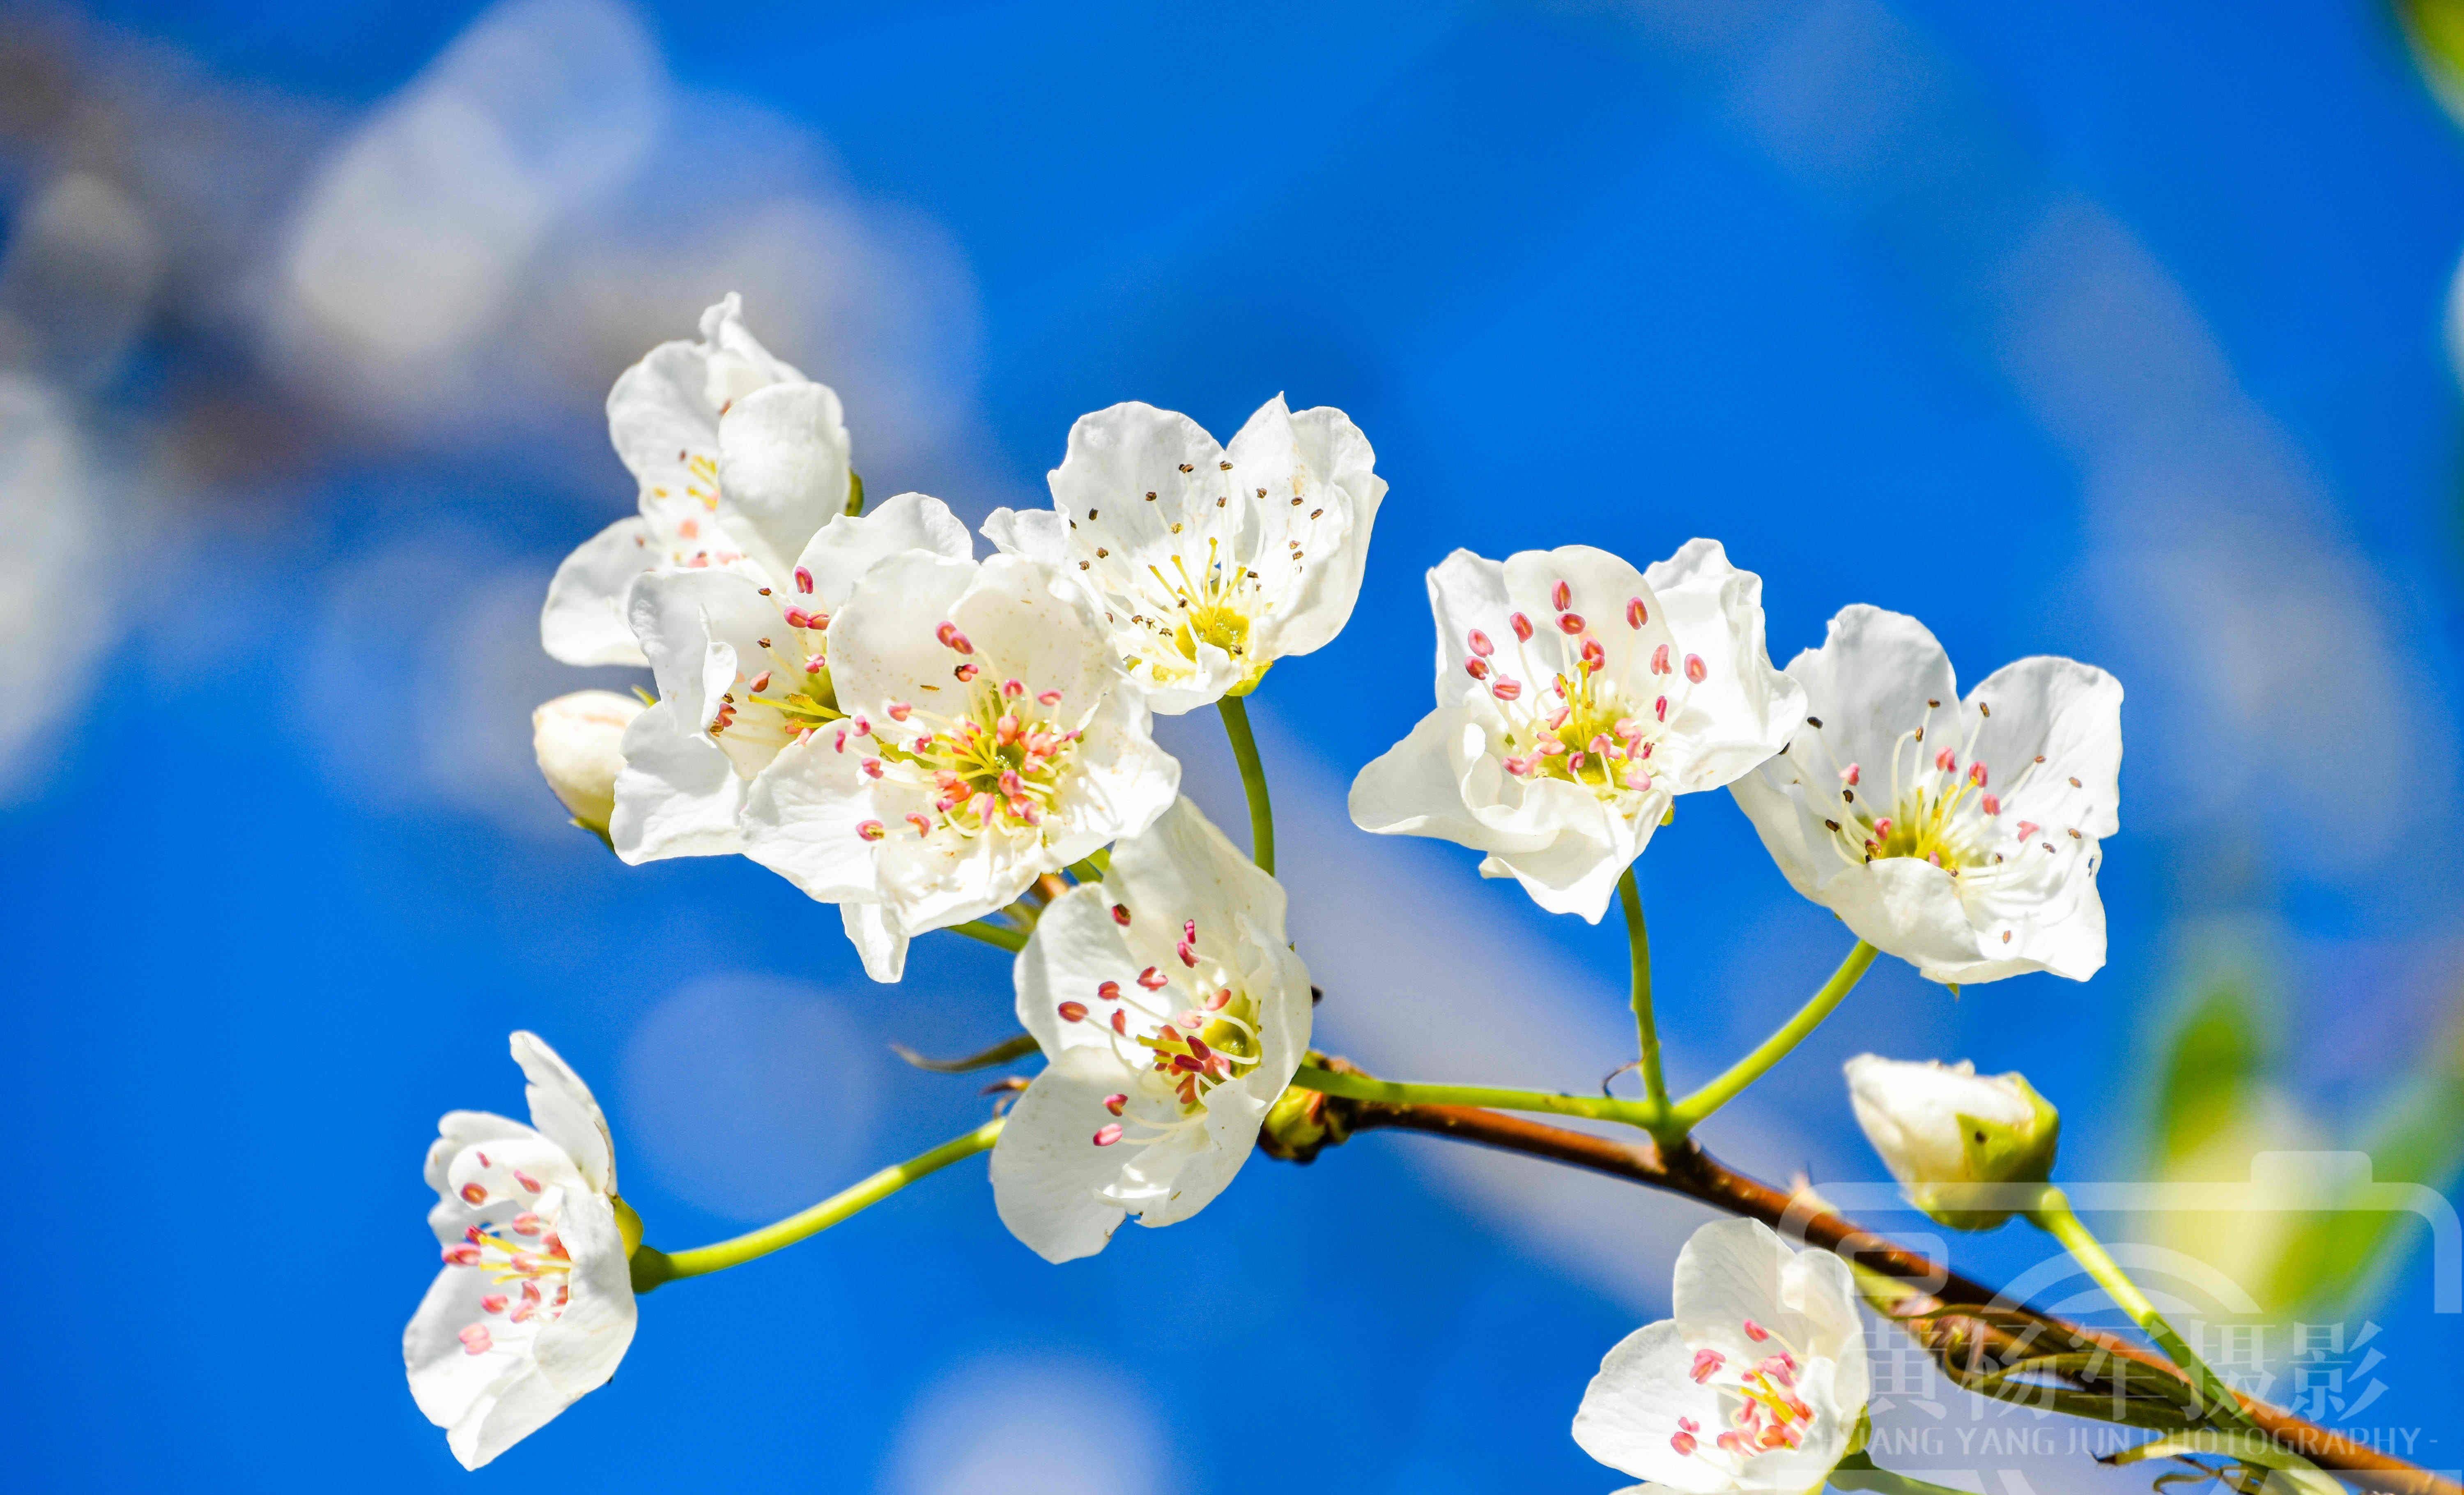 的梨花,阳光下亮丽如白雪的花儿很美,花瓣靓艳含香